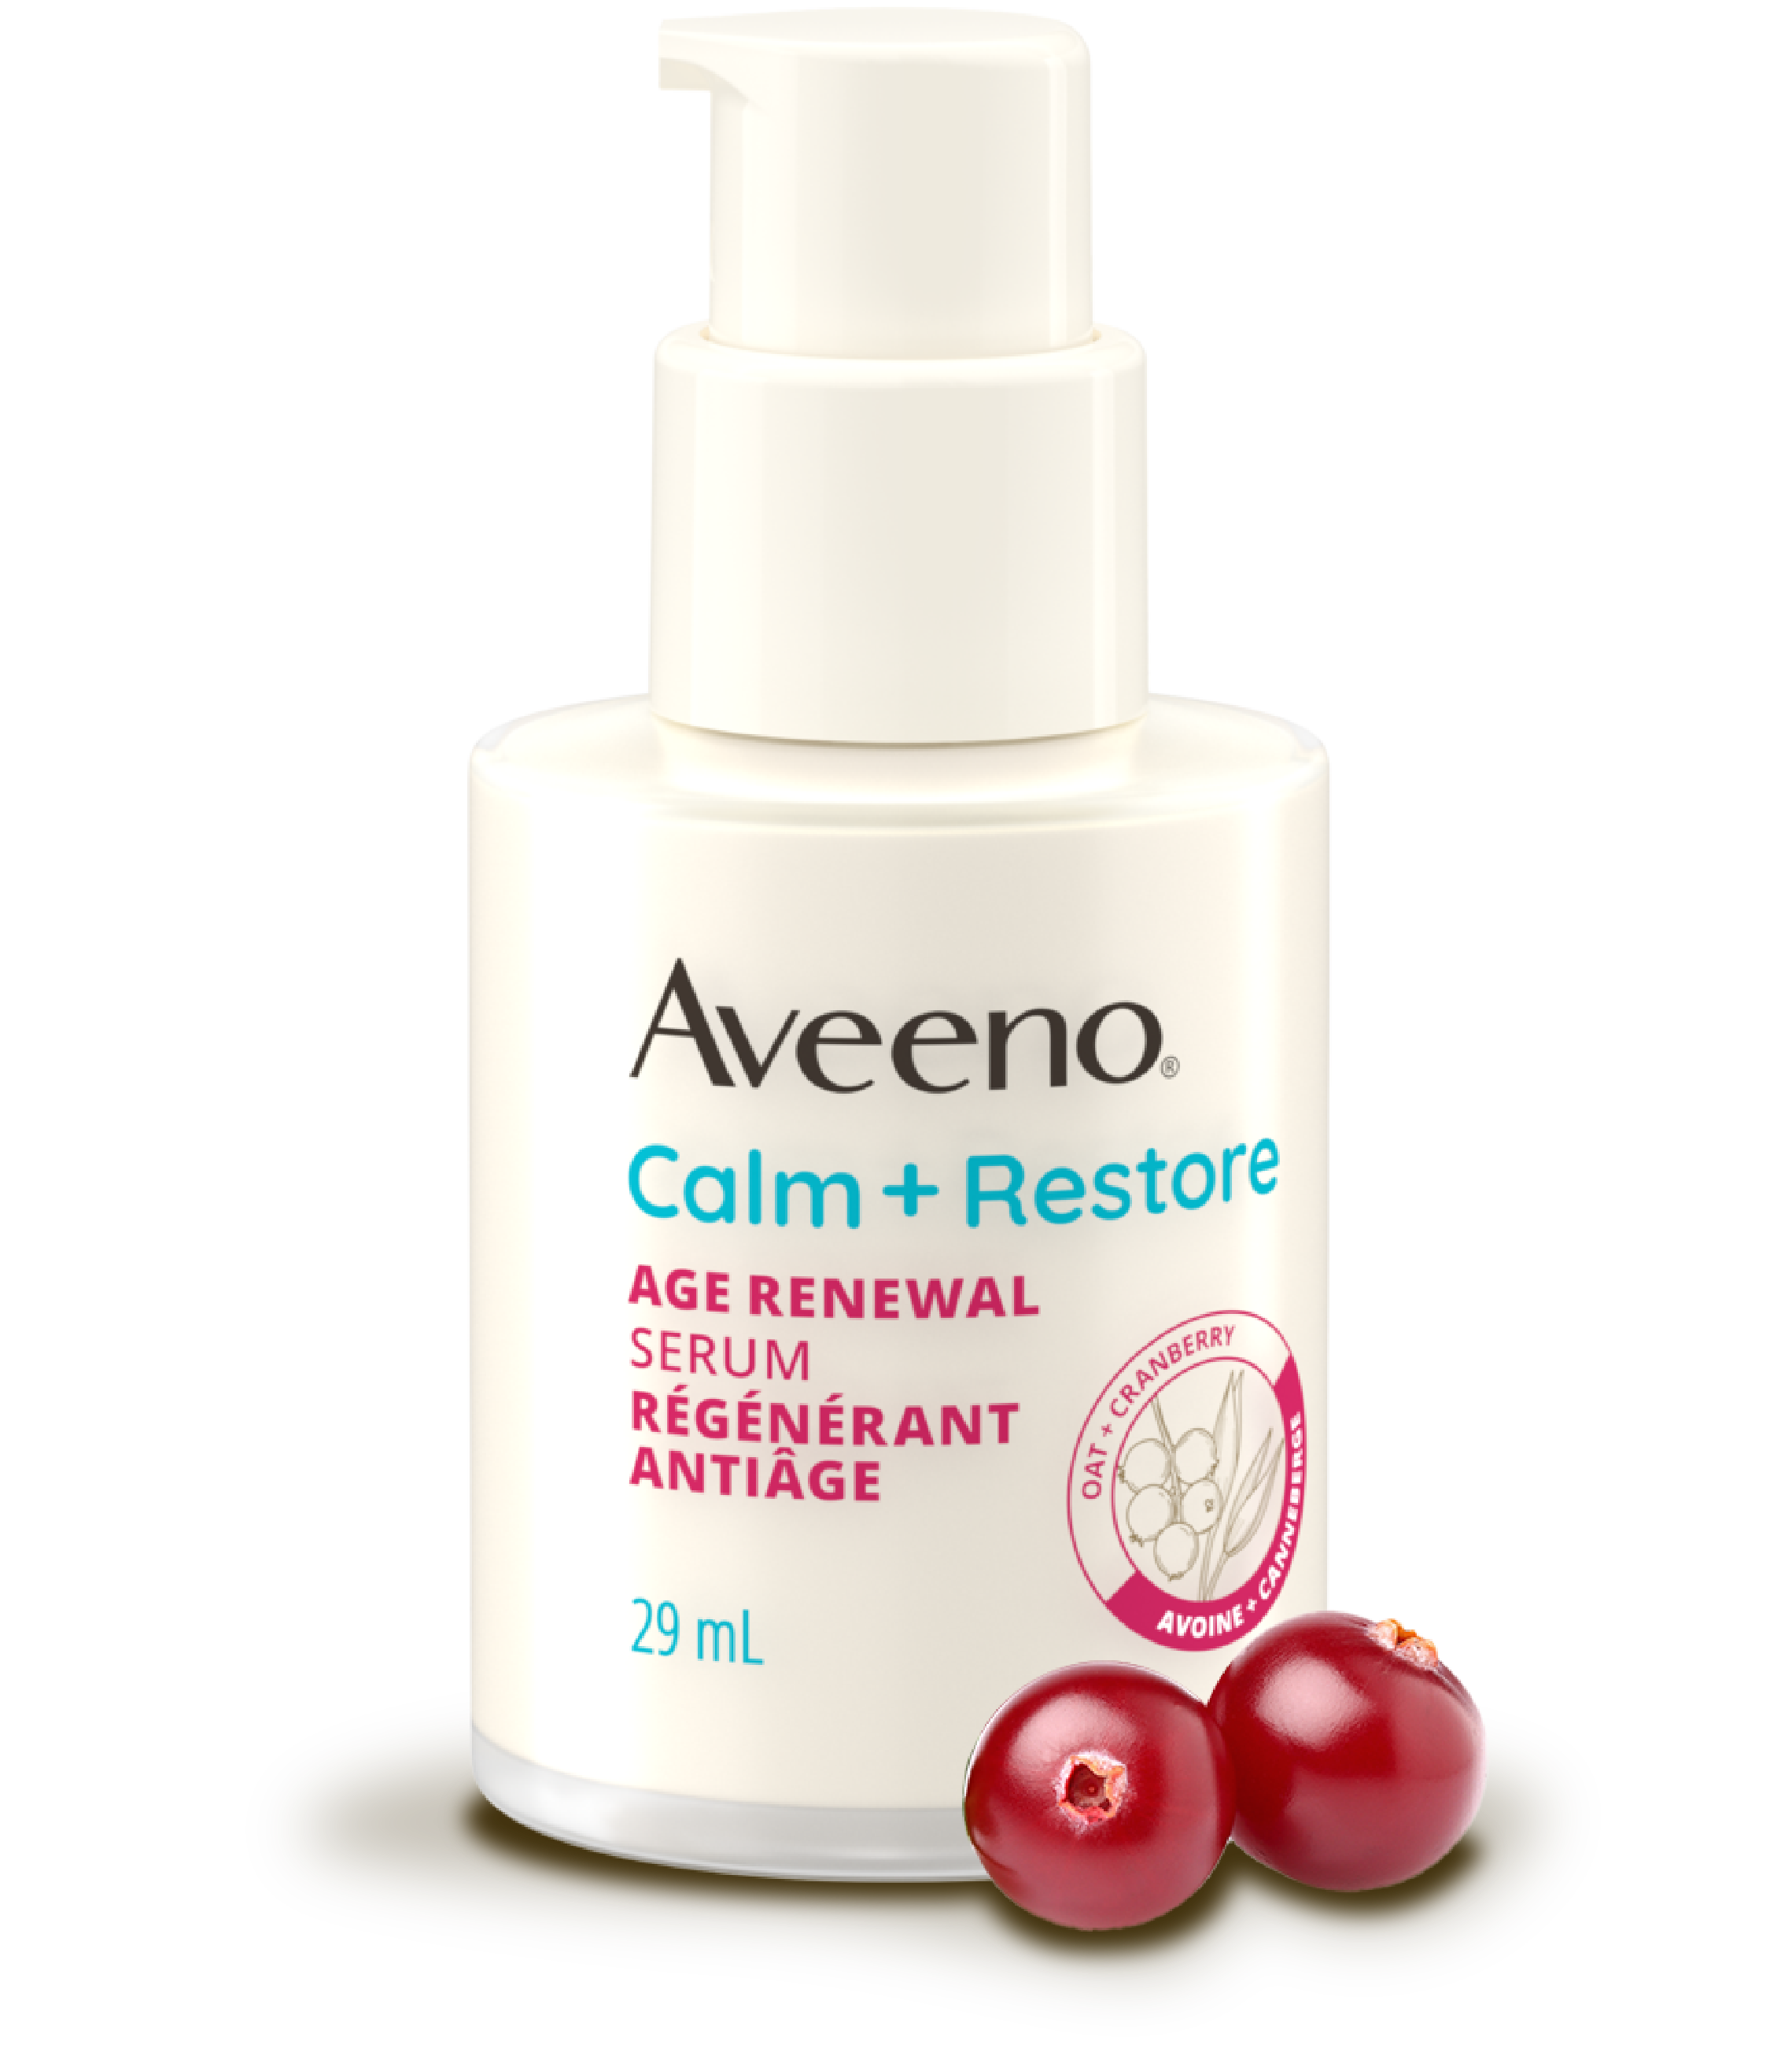 Aveeno Age Renewal精华液:  滋养护肤解决方案，打造永恒美丽，显着减少细纹和皱纹。